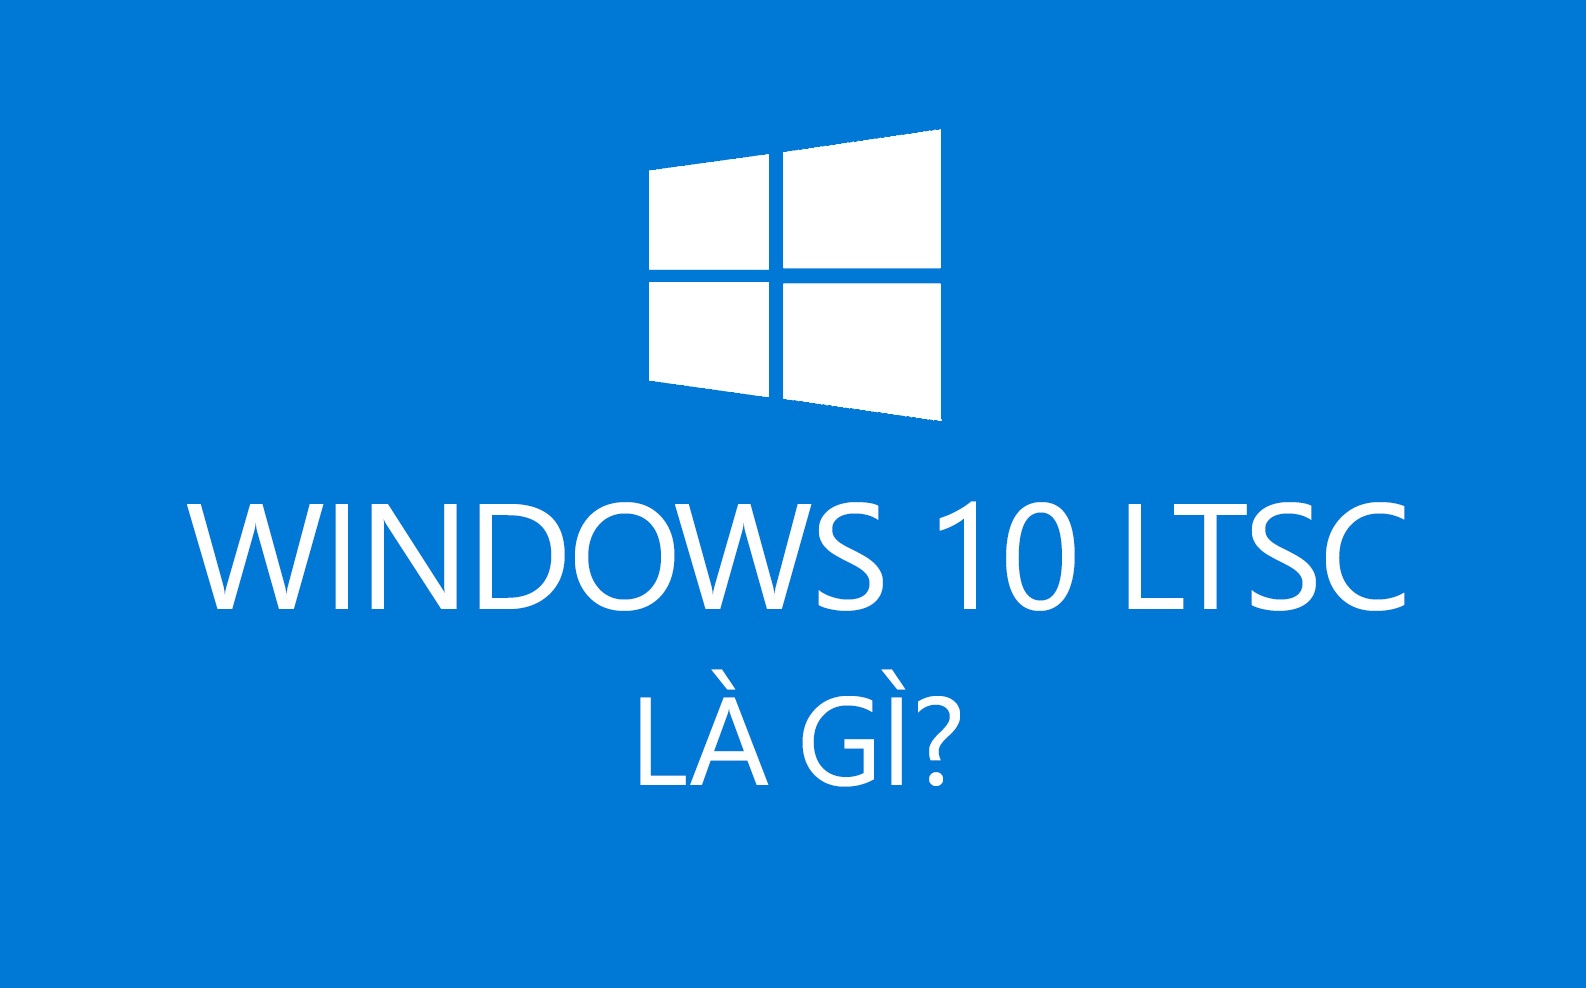 Windows 10 LTSC là gì?